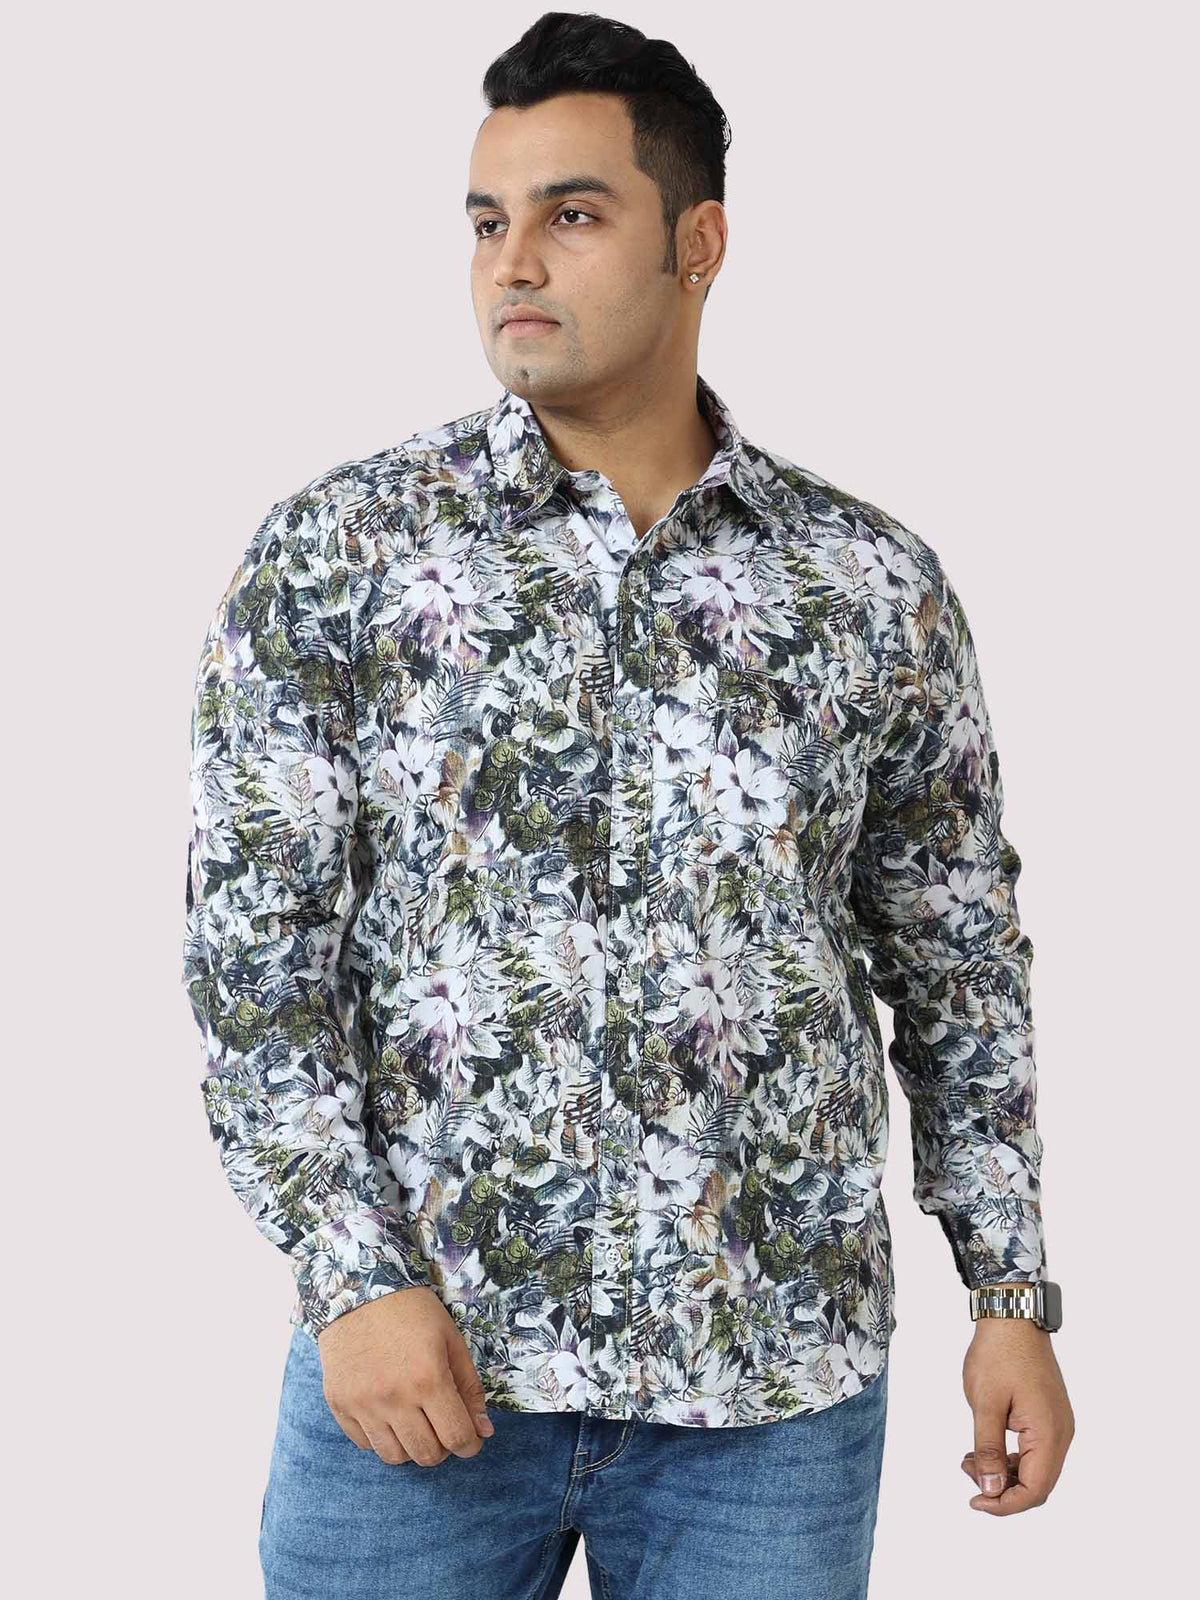 Pastel Floral Digital Printed Full Sleeve Men's Plus Size